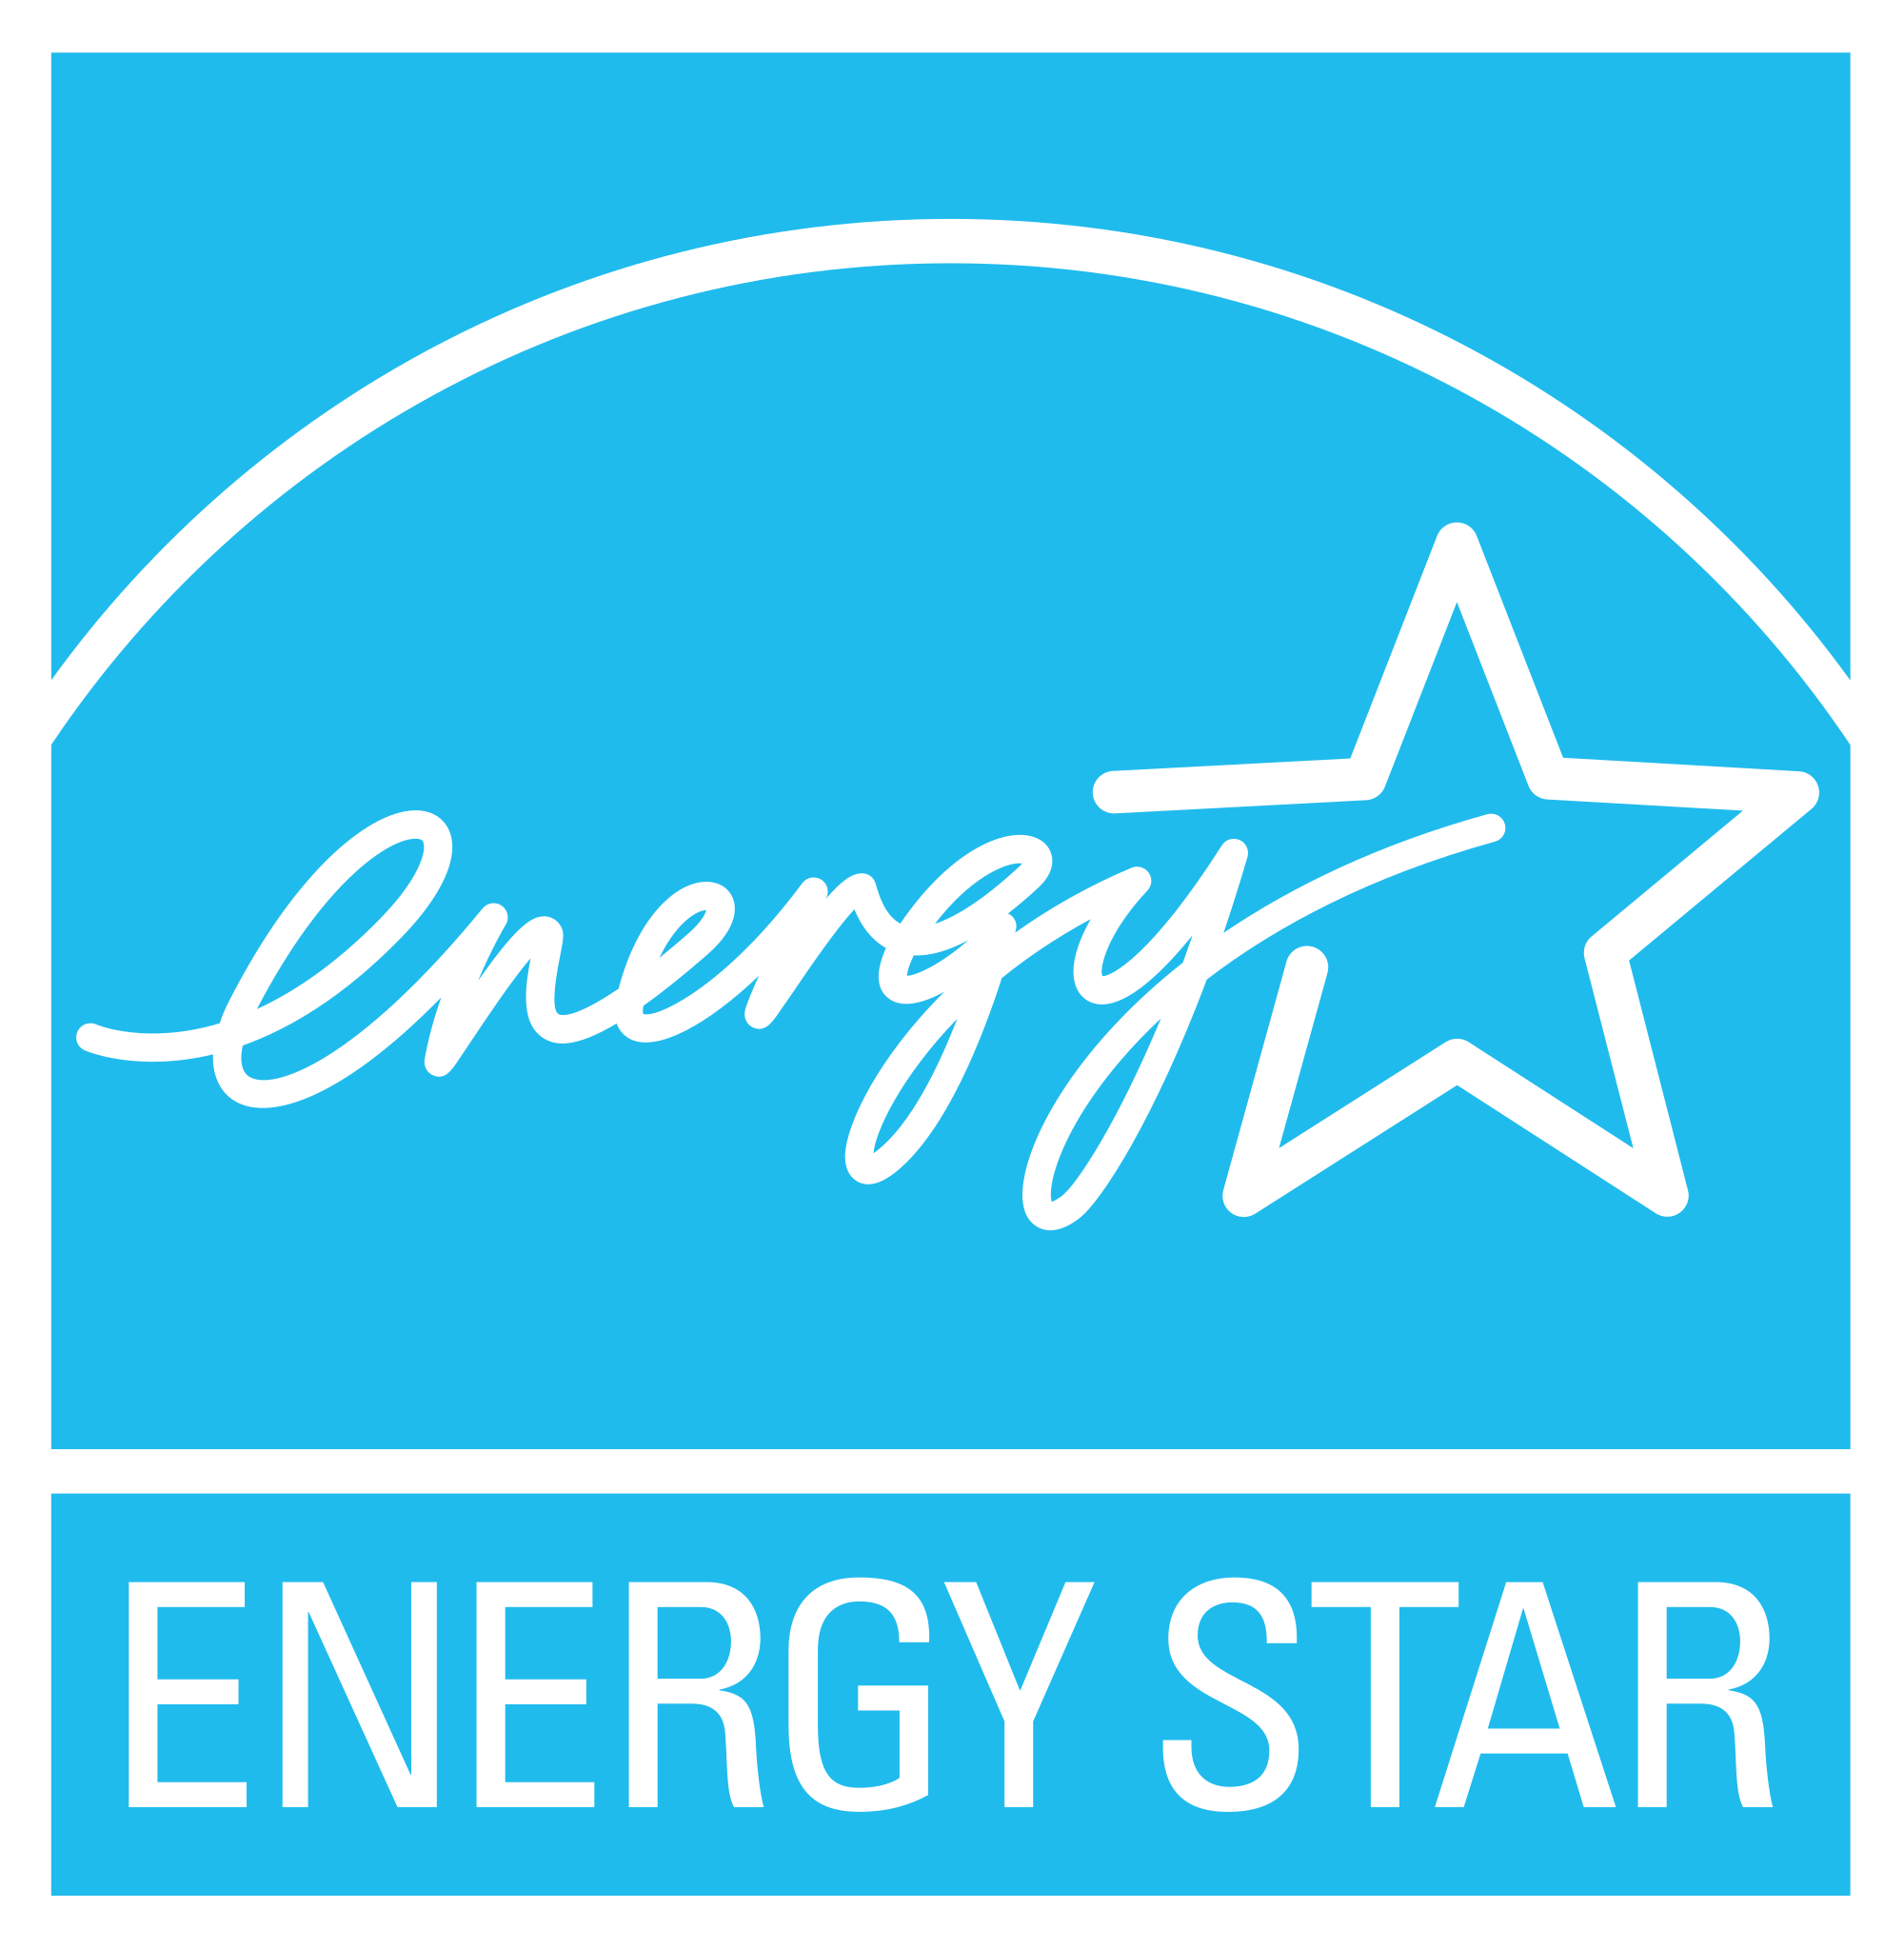 EPA Official Logo - Energy Star logo.svg